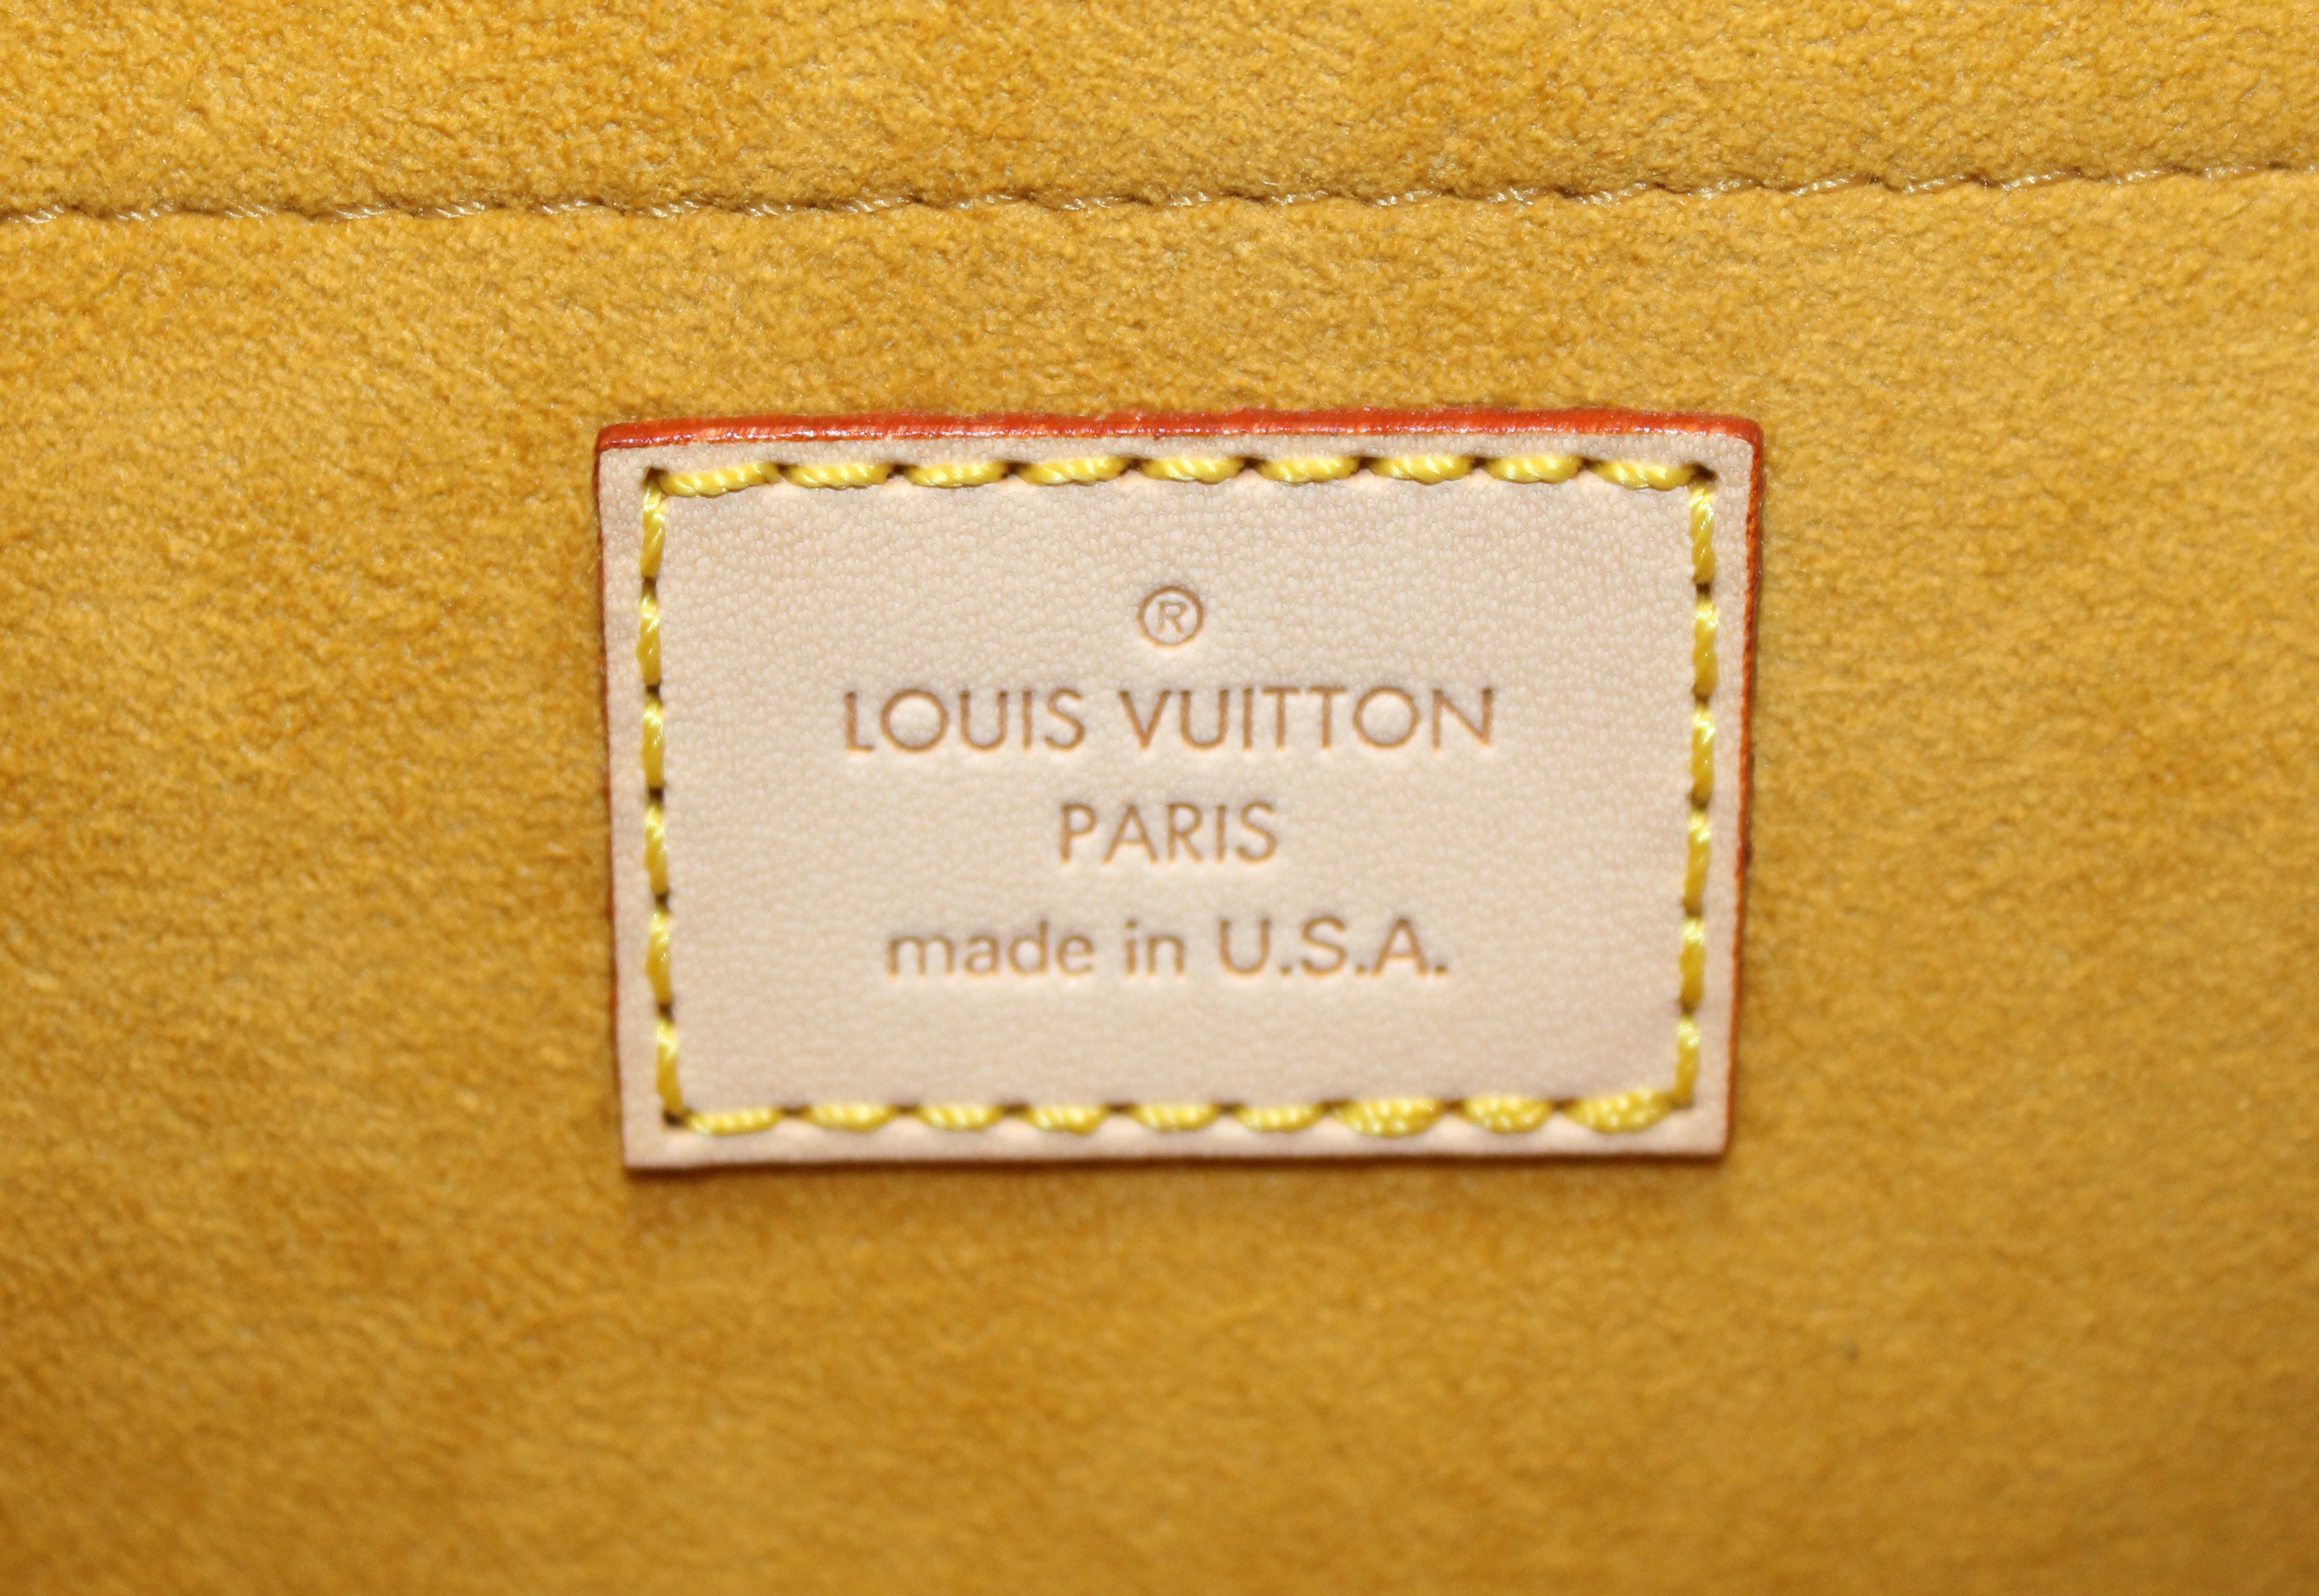 Vuitton - Borsa Louis Vuitton Pleaty mini in tela denim monogram blu e  pelle naturale - Monogram - GM - Shoulder - Saint - Bag - Cloud - M51242 –  celebrities wearing Louis Vuitton Archlight sneakers - Louis